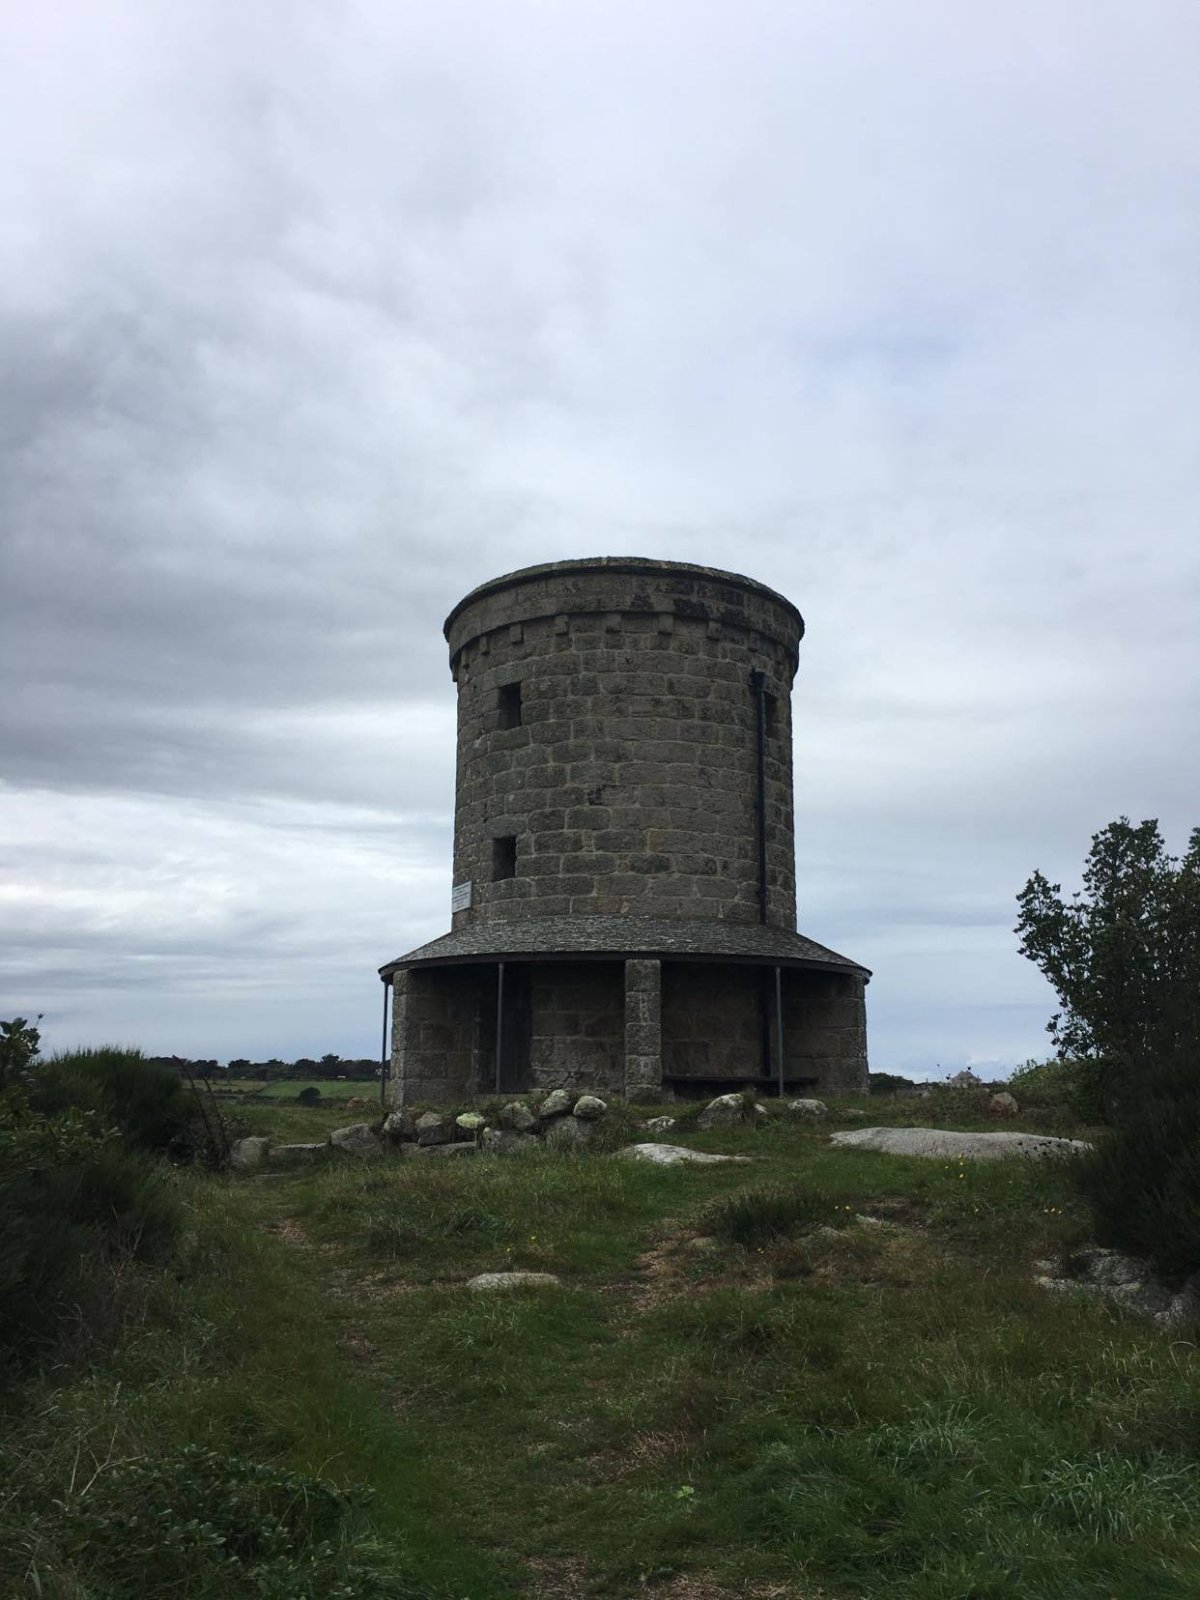 Buzza Tower